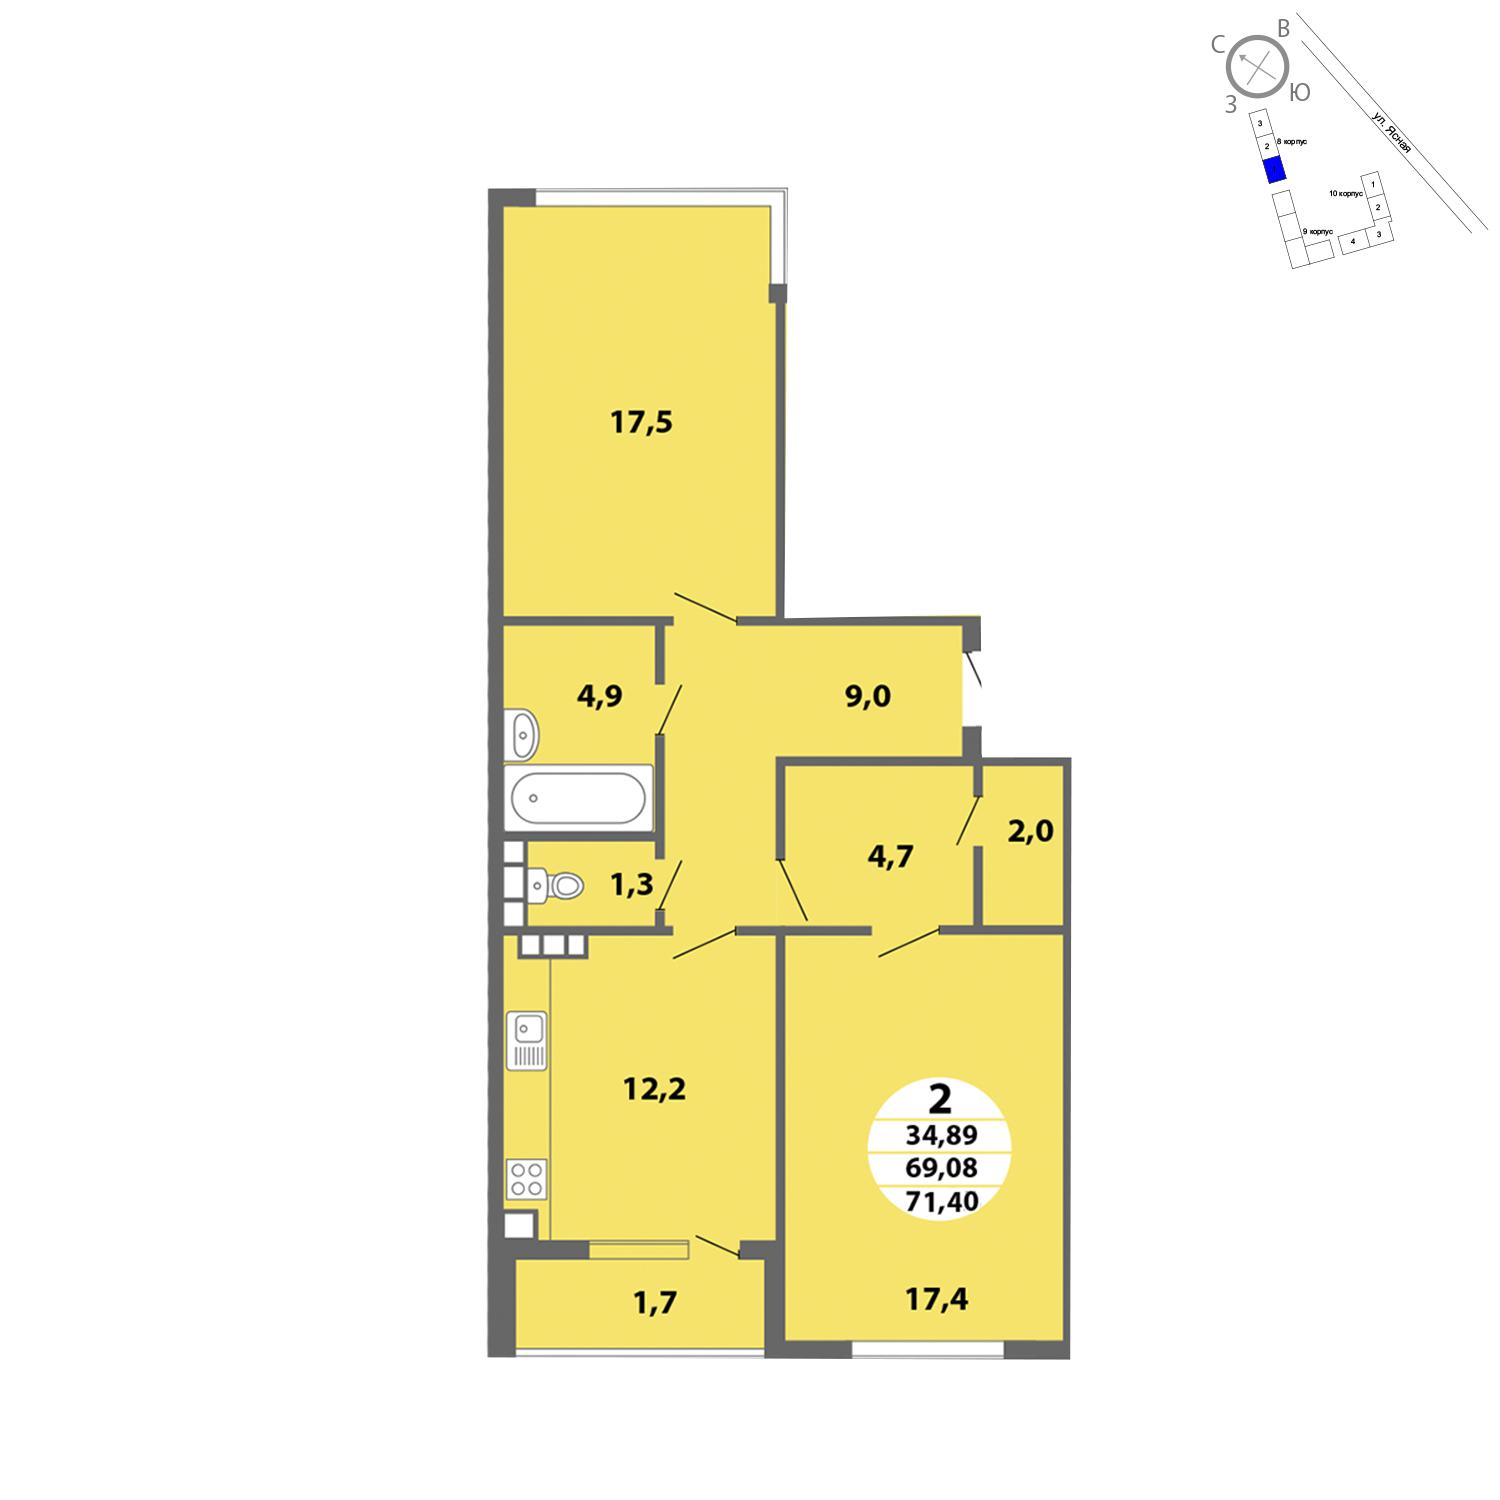 Продаётся 2-комнатная квартира в новостройке 71.4 кв.м. этаж 4/4 за 0 руб 